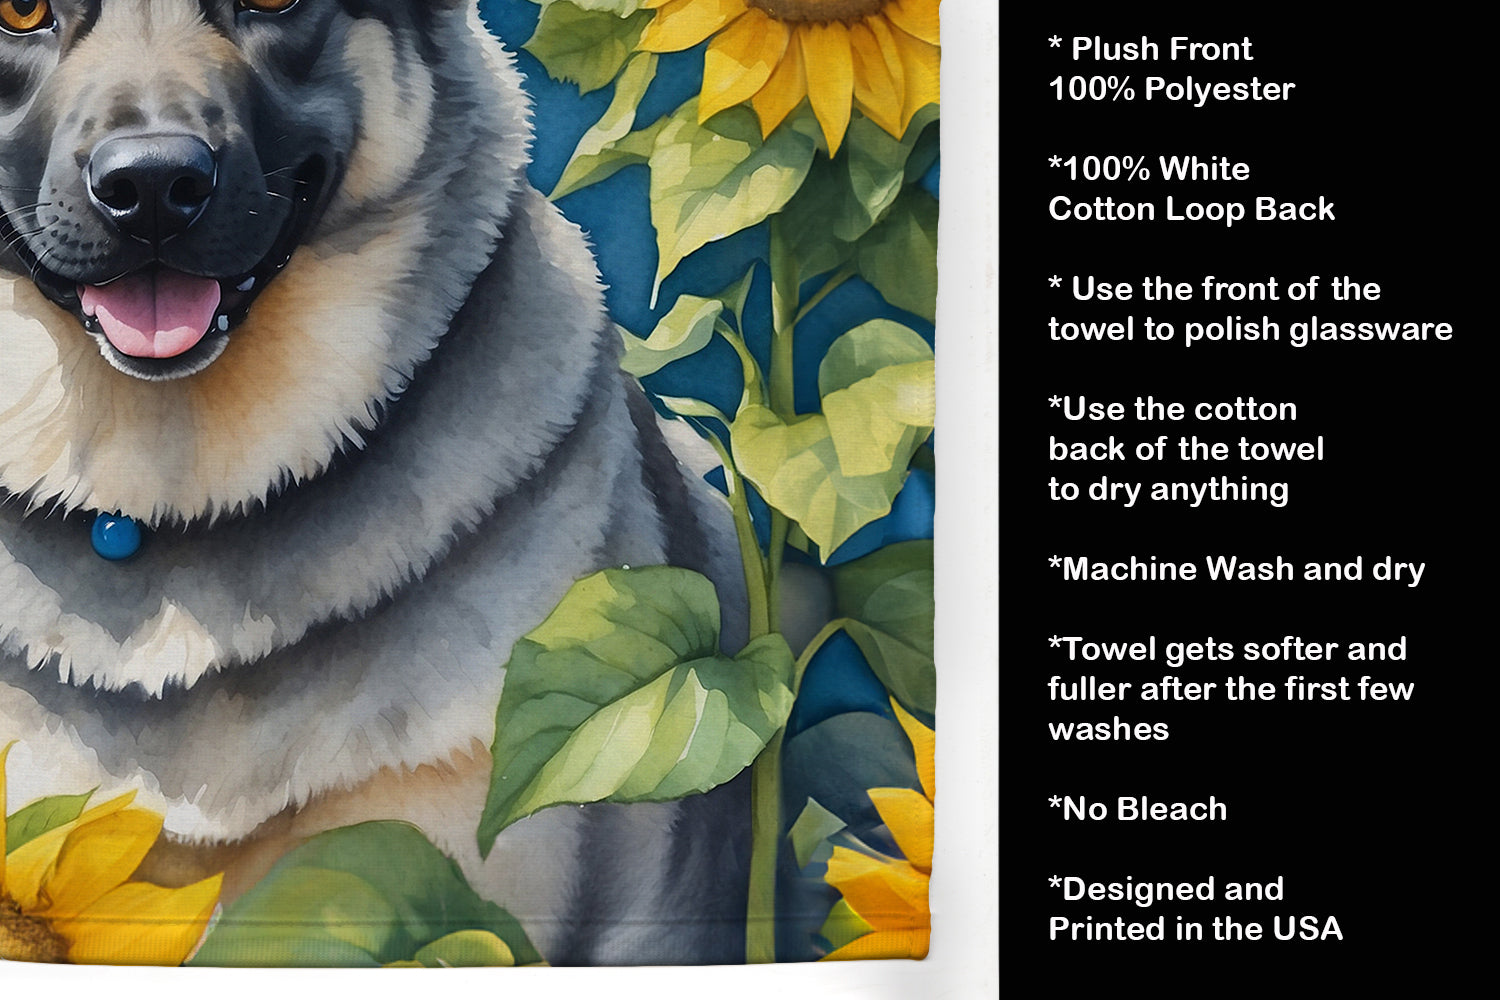 Norwegian Elkhound in Sunflowers Kitchen Towel